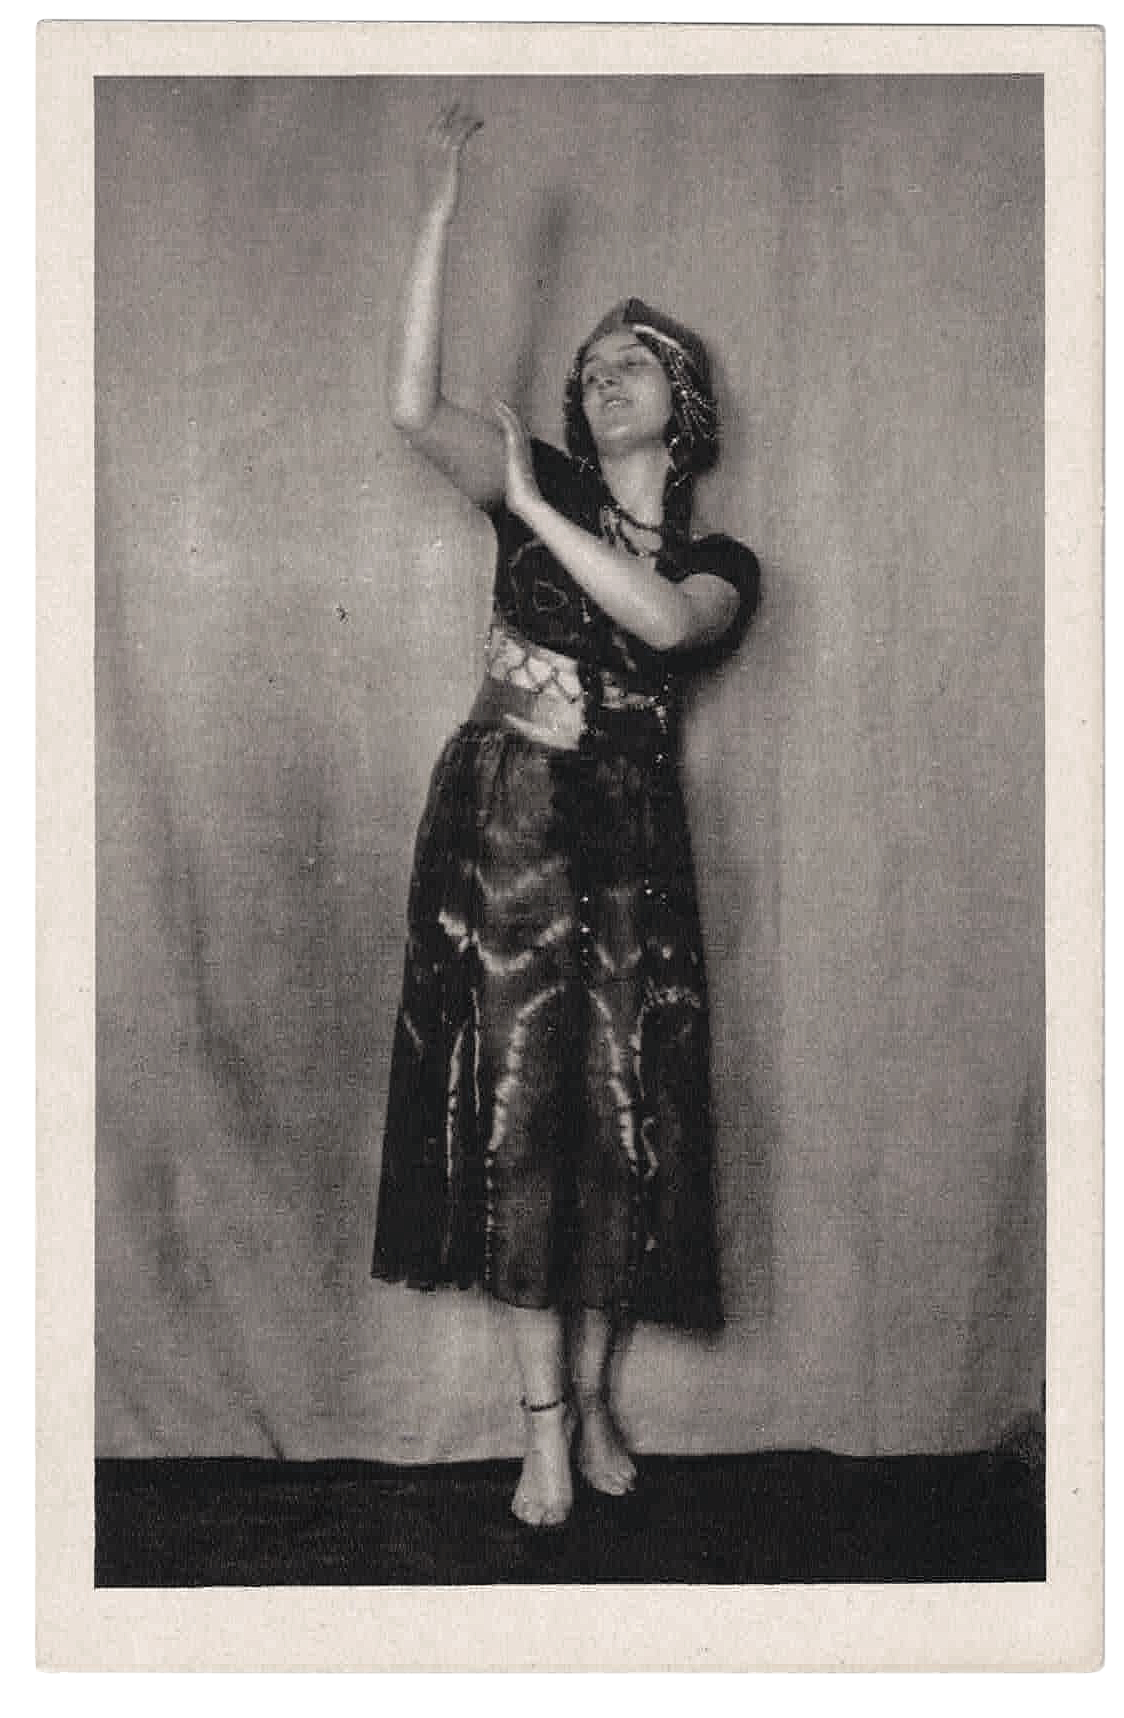 Frances Metz in Kostüm und Tanzpose | (Foto: keine Angabe) | Ansichtskarte | Radiotinto von Brend’smour, Simhart & Co. München | o. J. | © Sammlung Betz, Munich Dance Histories